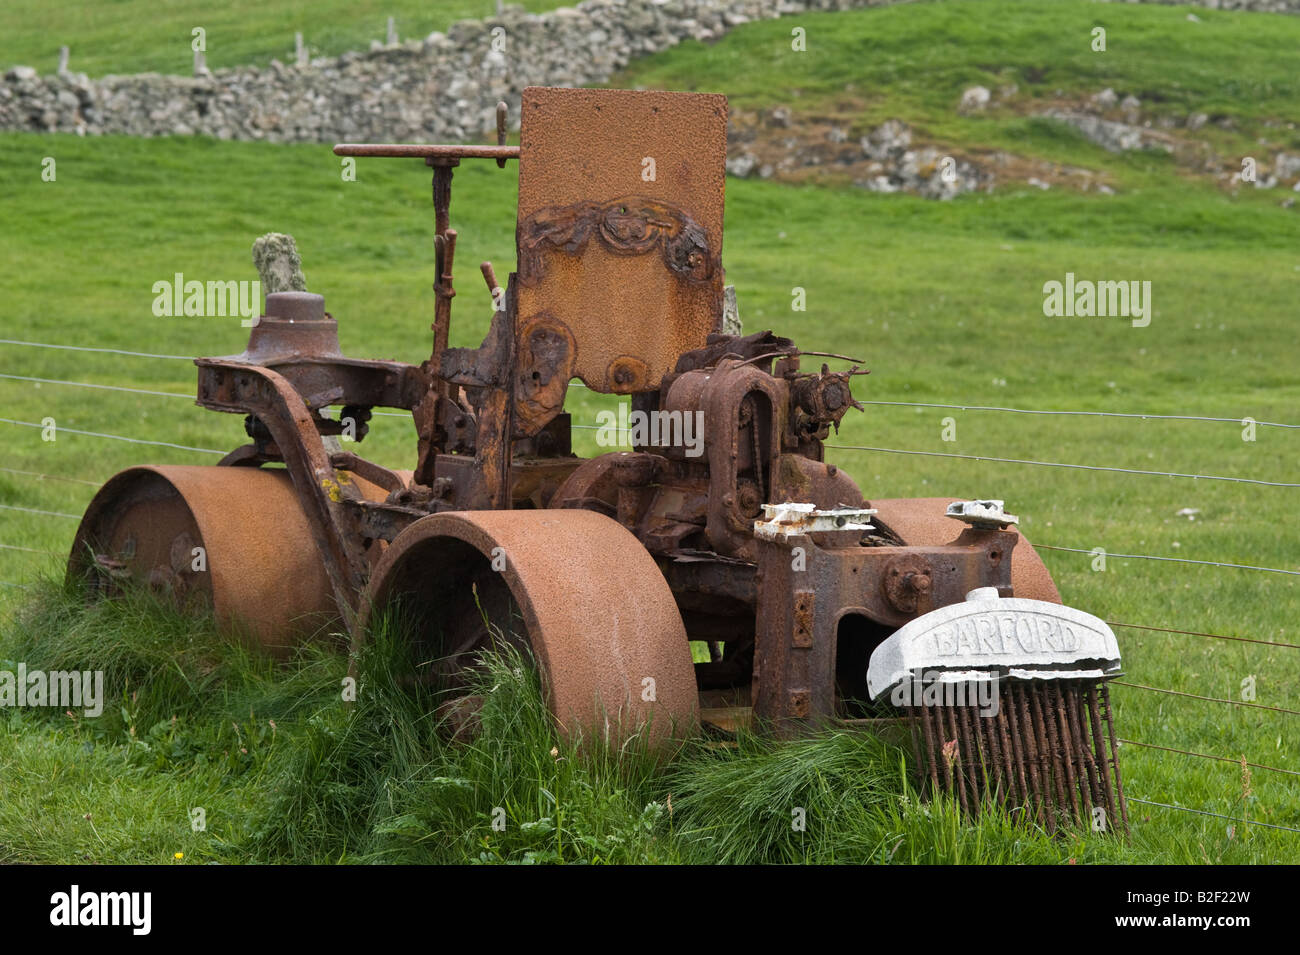 Barford rouleau, Rusty, machines abandonnées sur le pâturage, côté de la route, Fair Isle, Shetland, Écosse, juin Banque D'Images